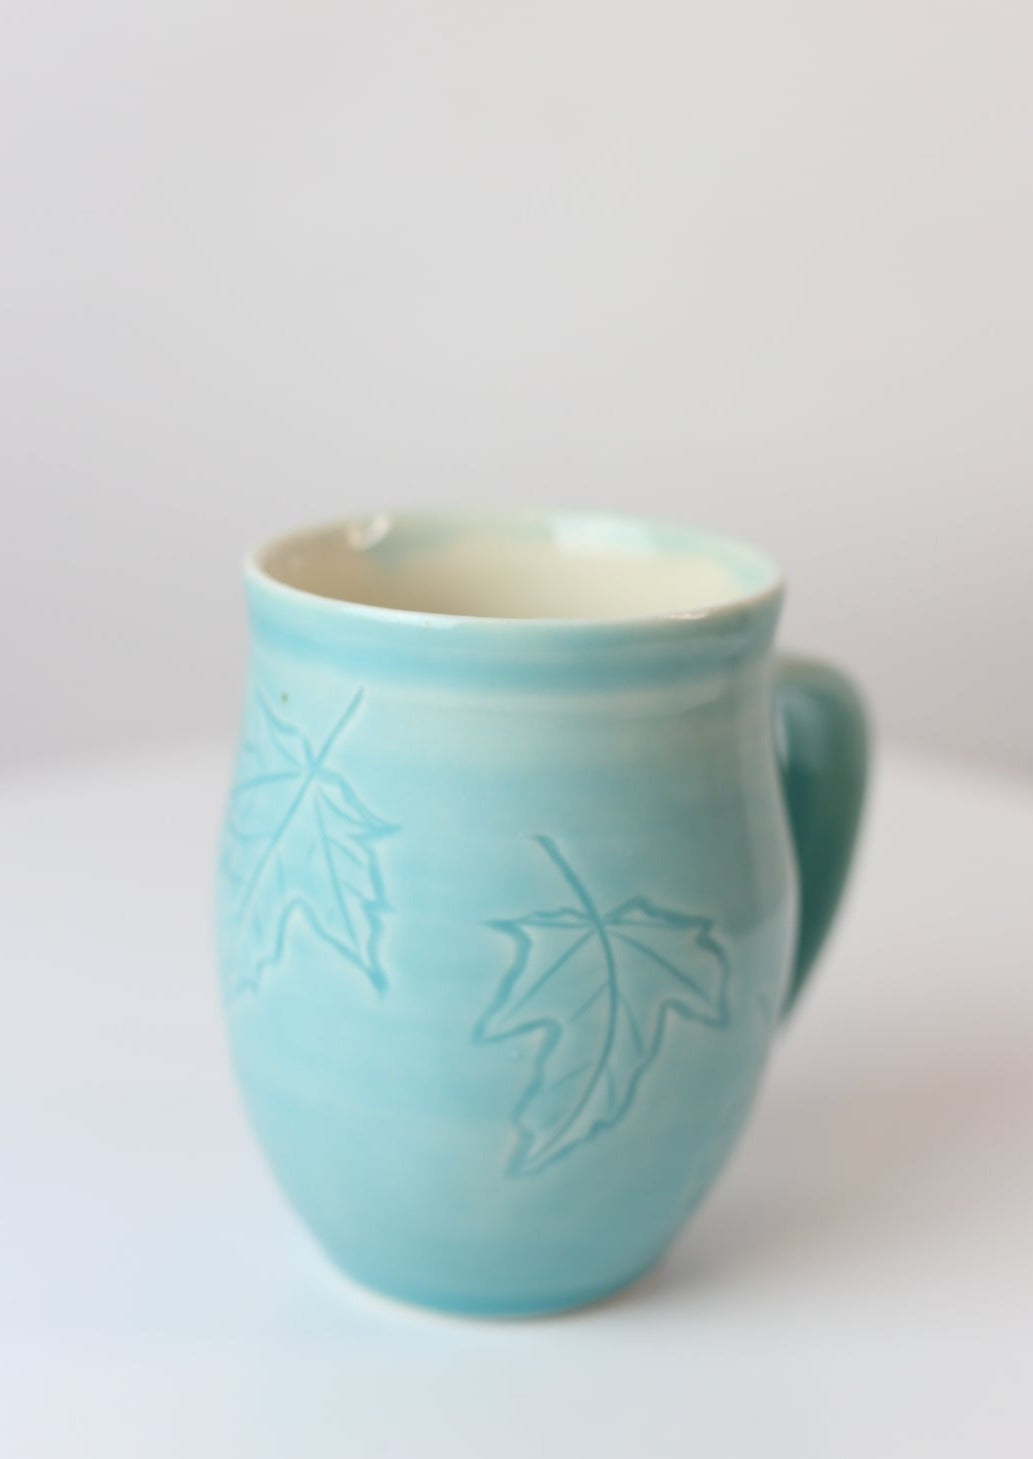 12 oz porcelain mug with carved maple leaf design in turquoise